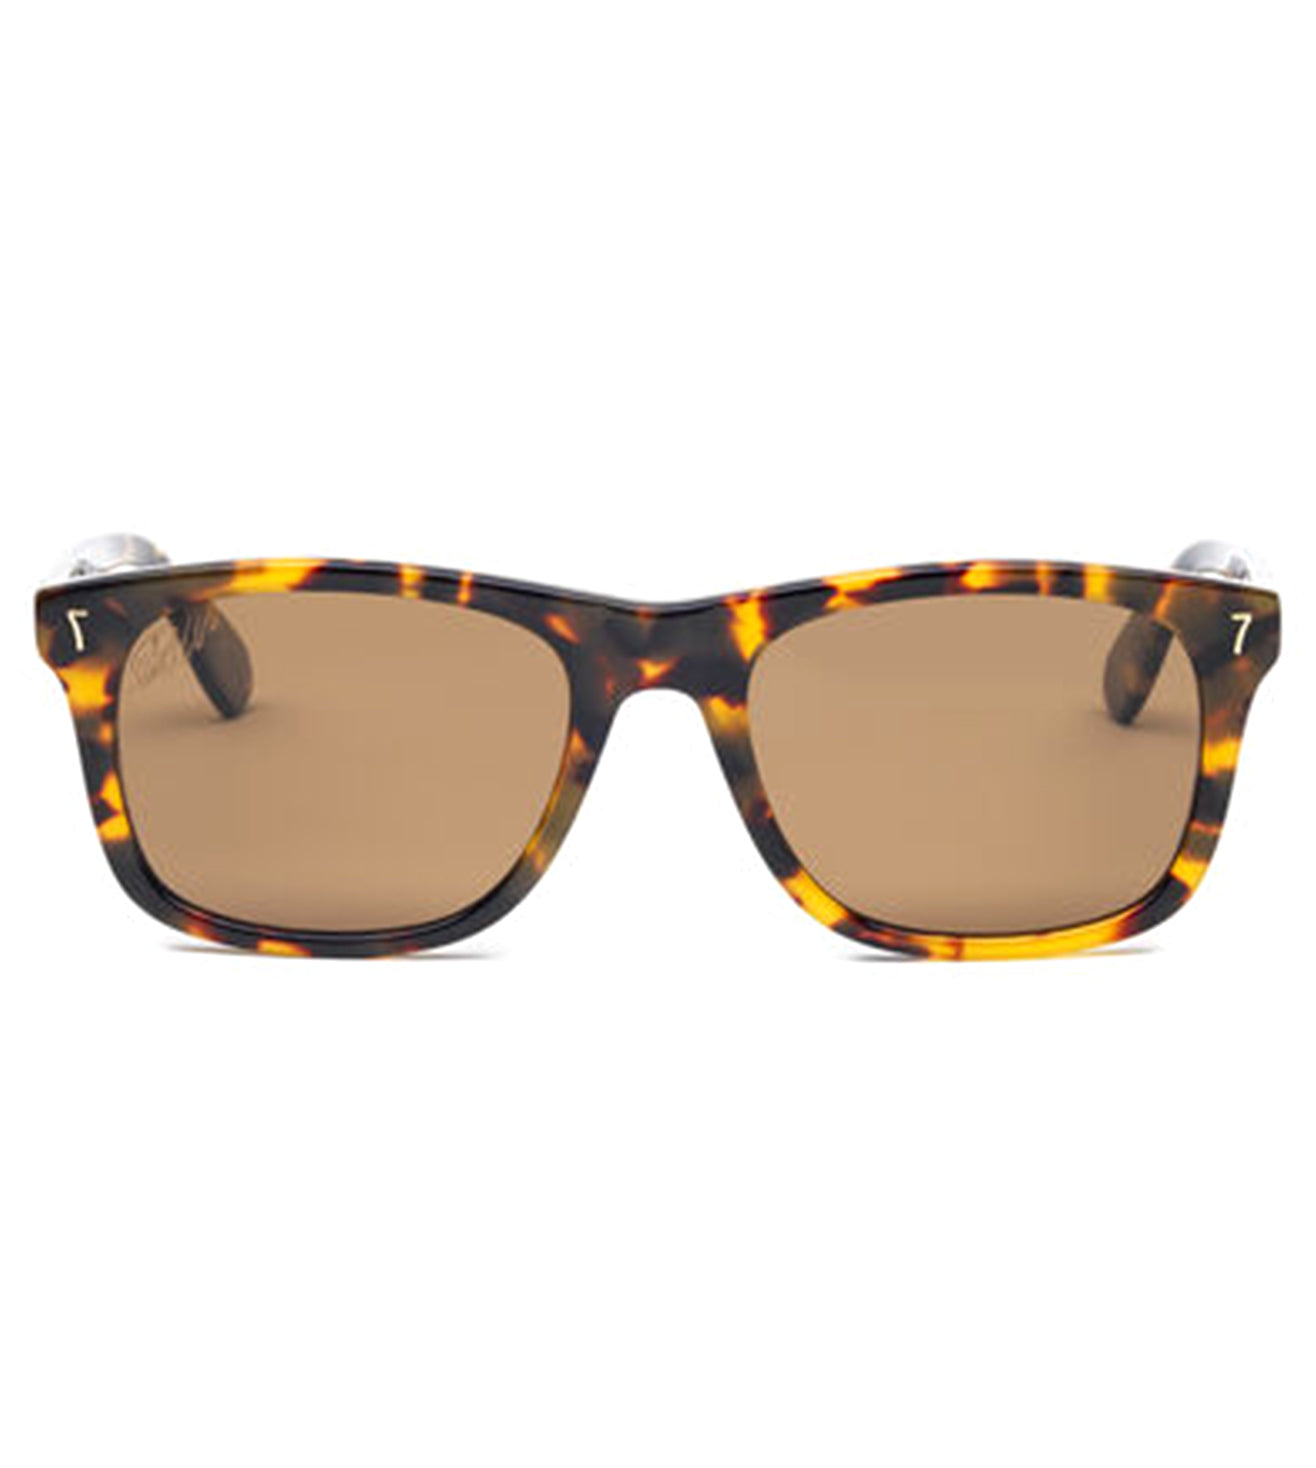 CR7 Unisex Brown Square Sunglasses